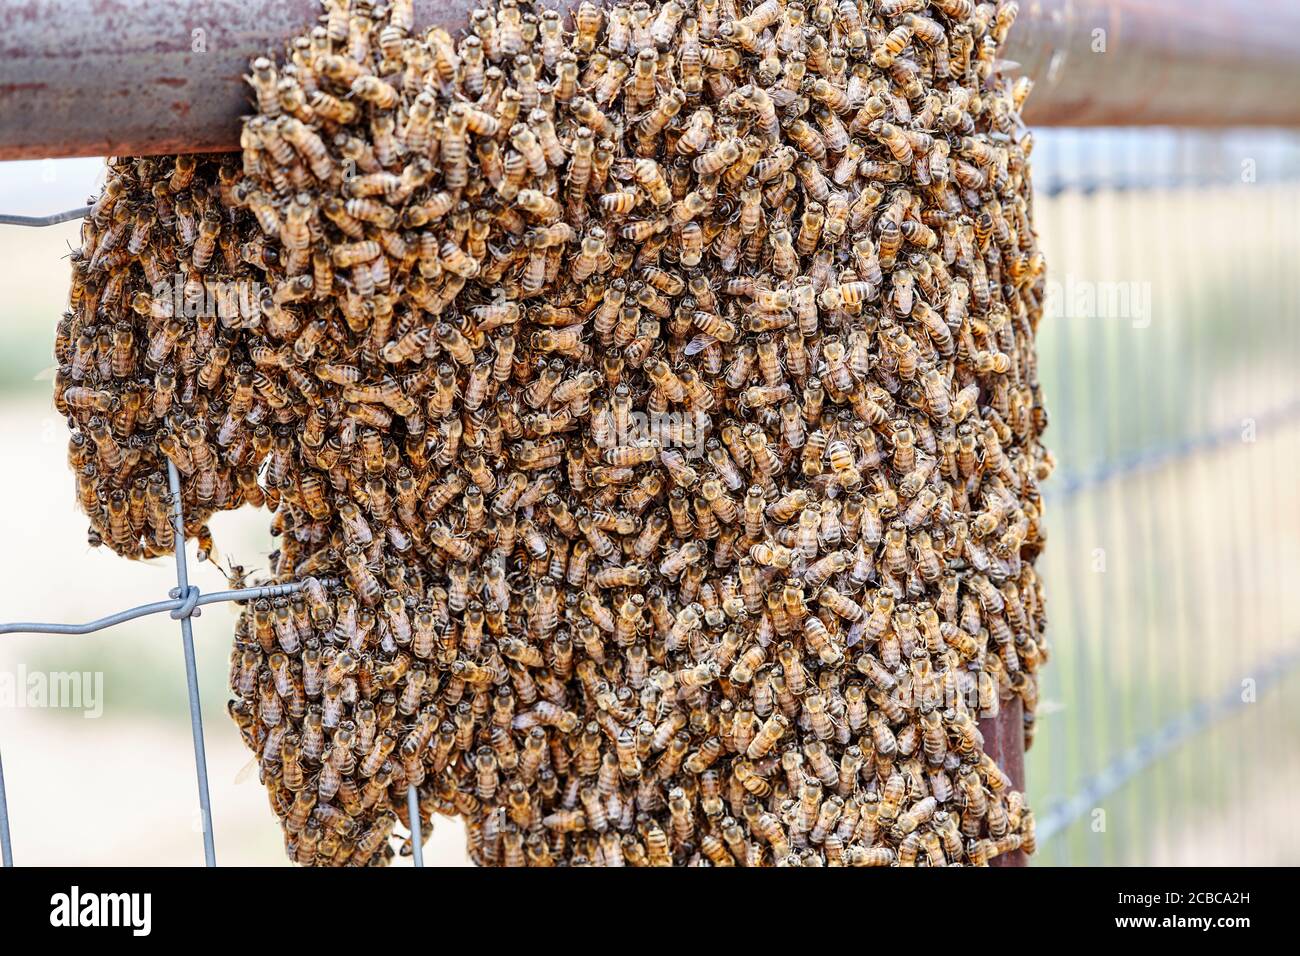 Grande sciame di api africanizzate su una fence Foto Stock